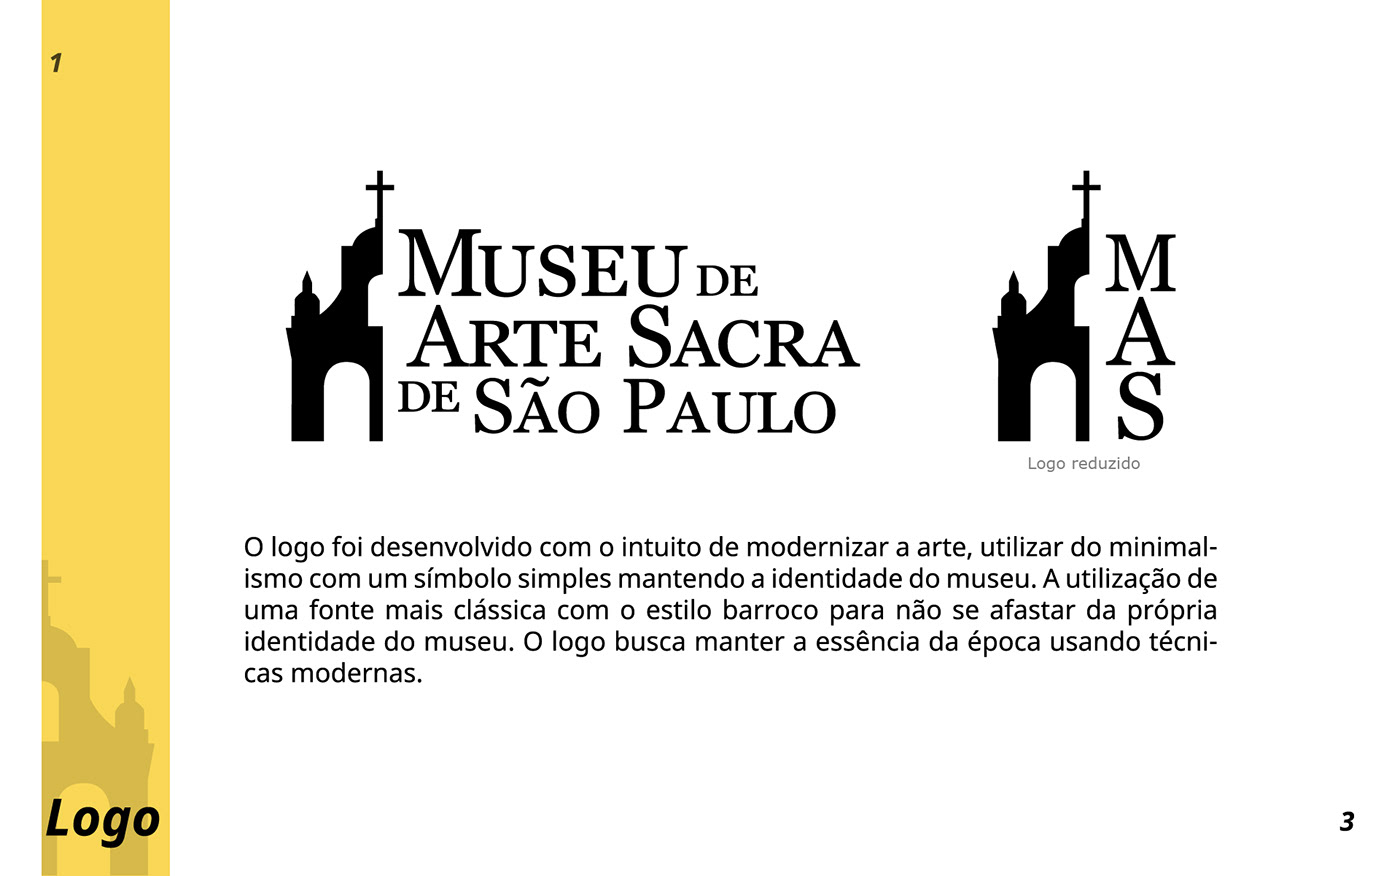 design logo Museu de arte sacra Project são paulo University